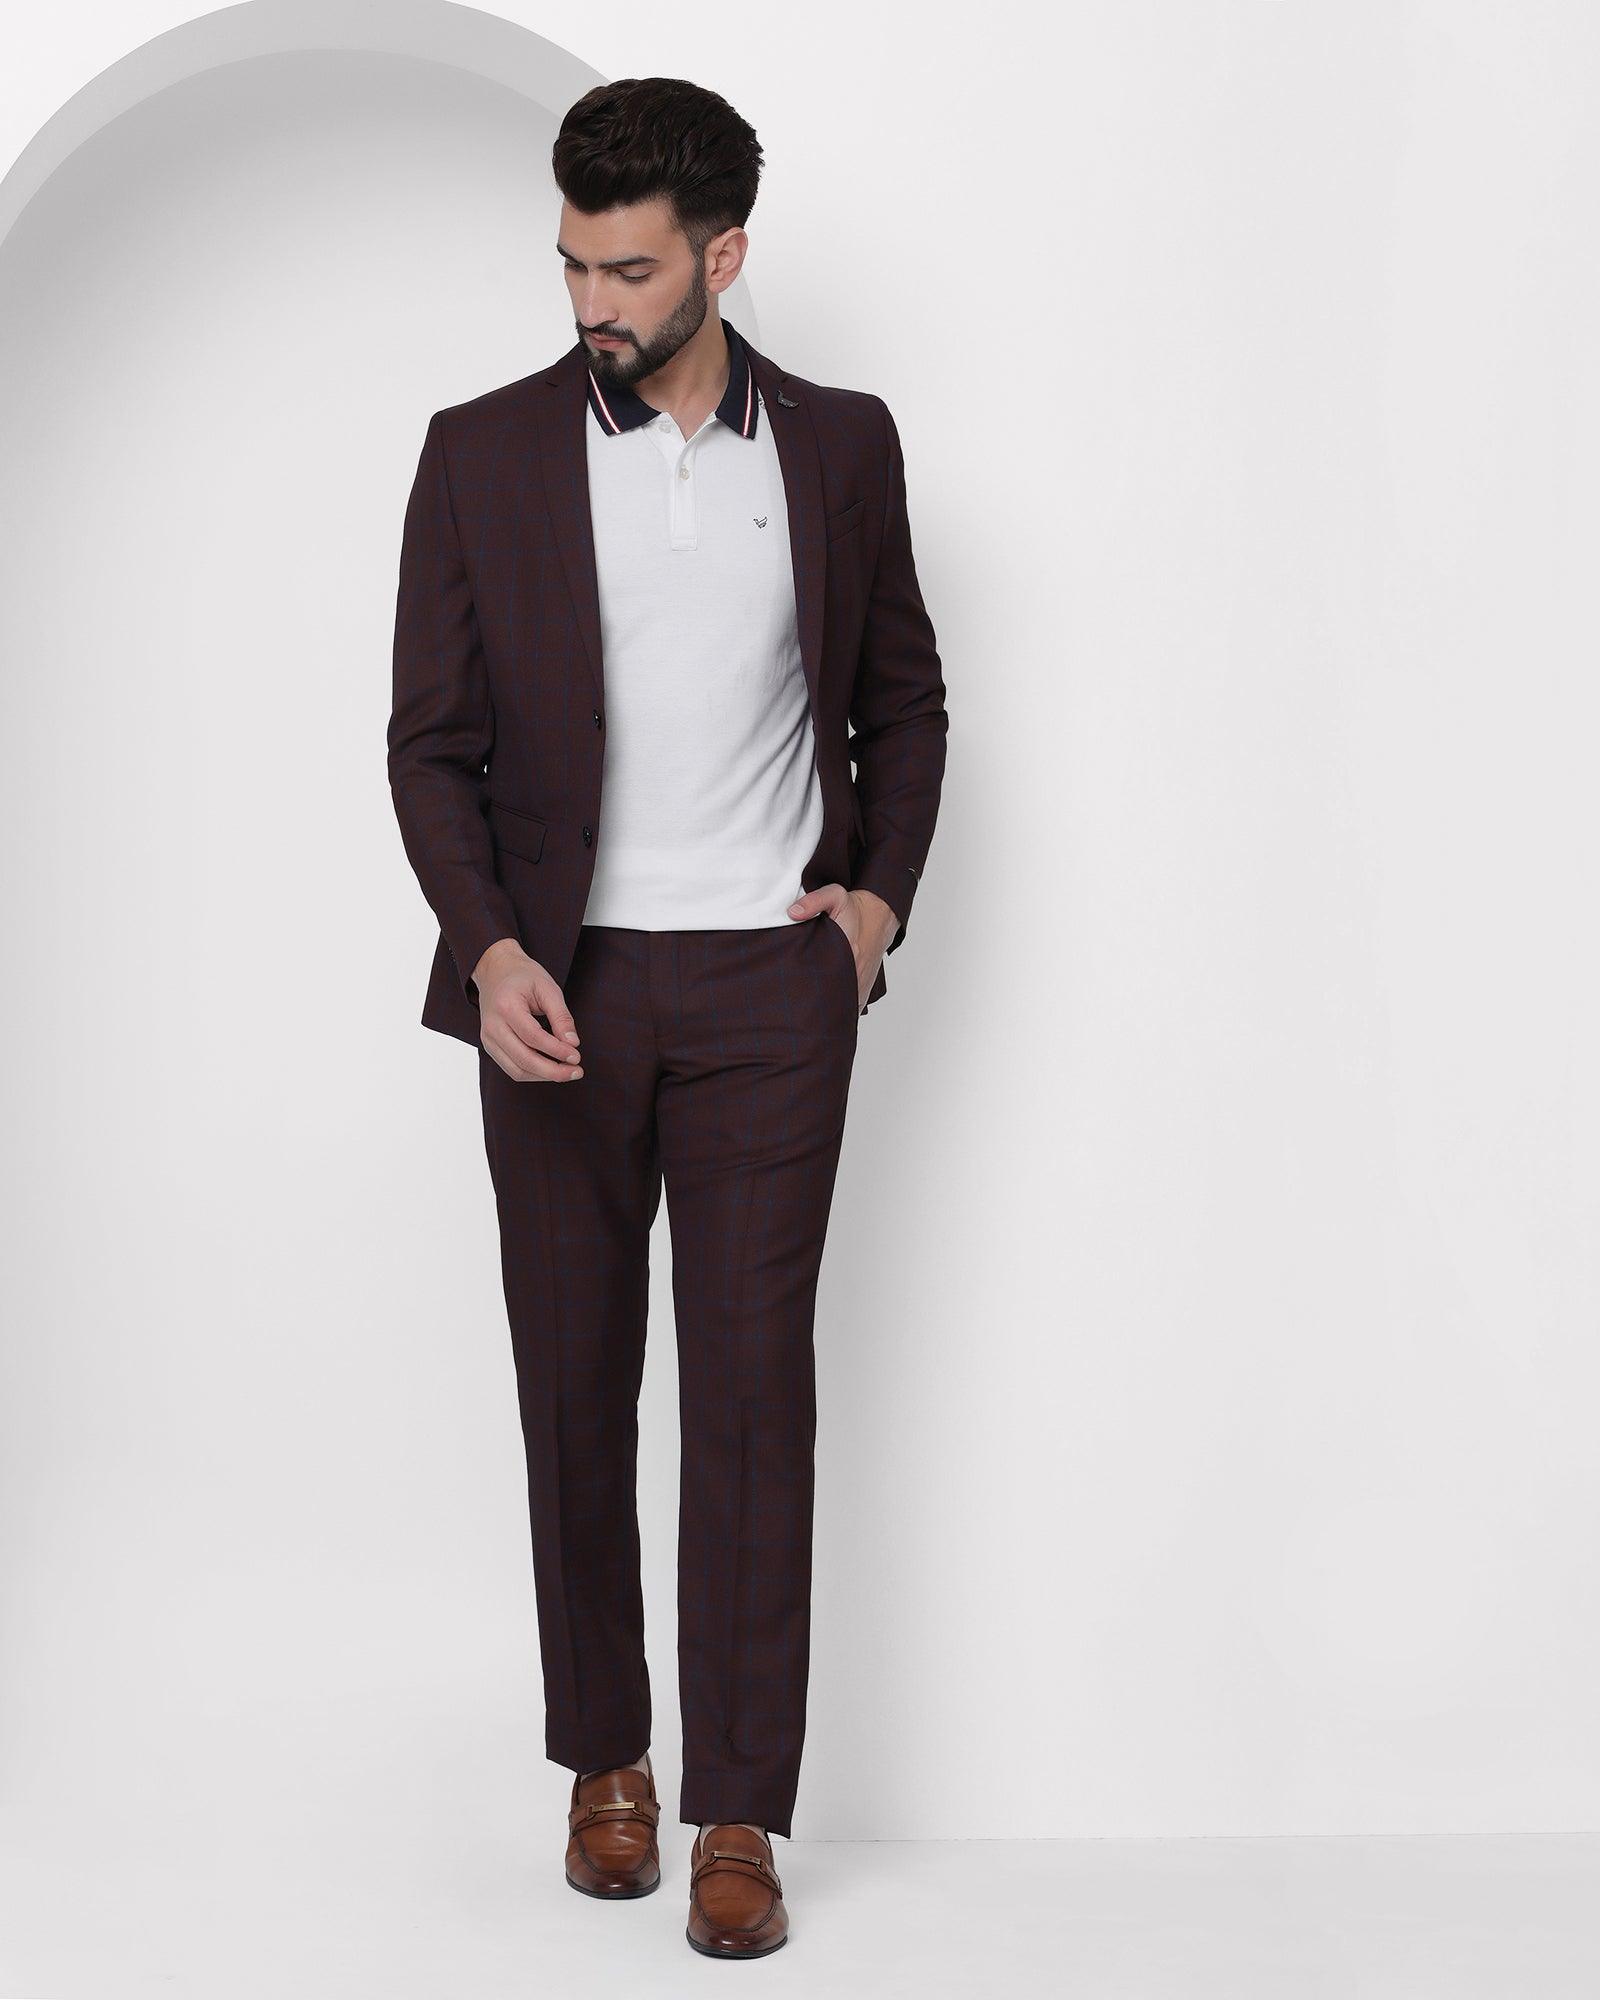 Suits & Blazers - Men's Suits & Blazer Jacket Online at Best Prices |  Flipkart.com